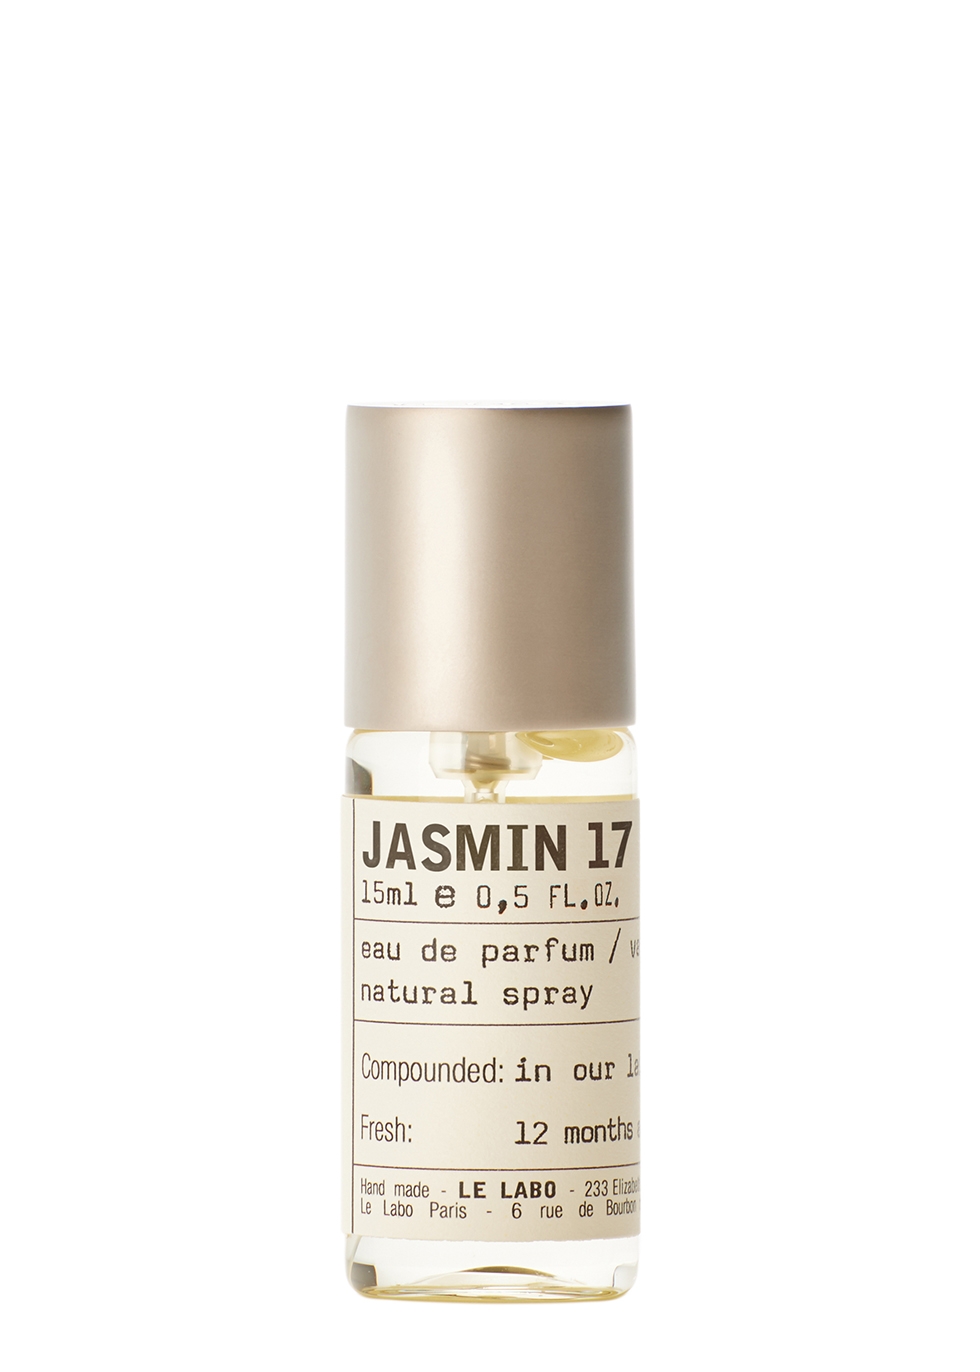 Le Labo Jasmin 17 Eau De Parfum 15ml - Harvey Nichols